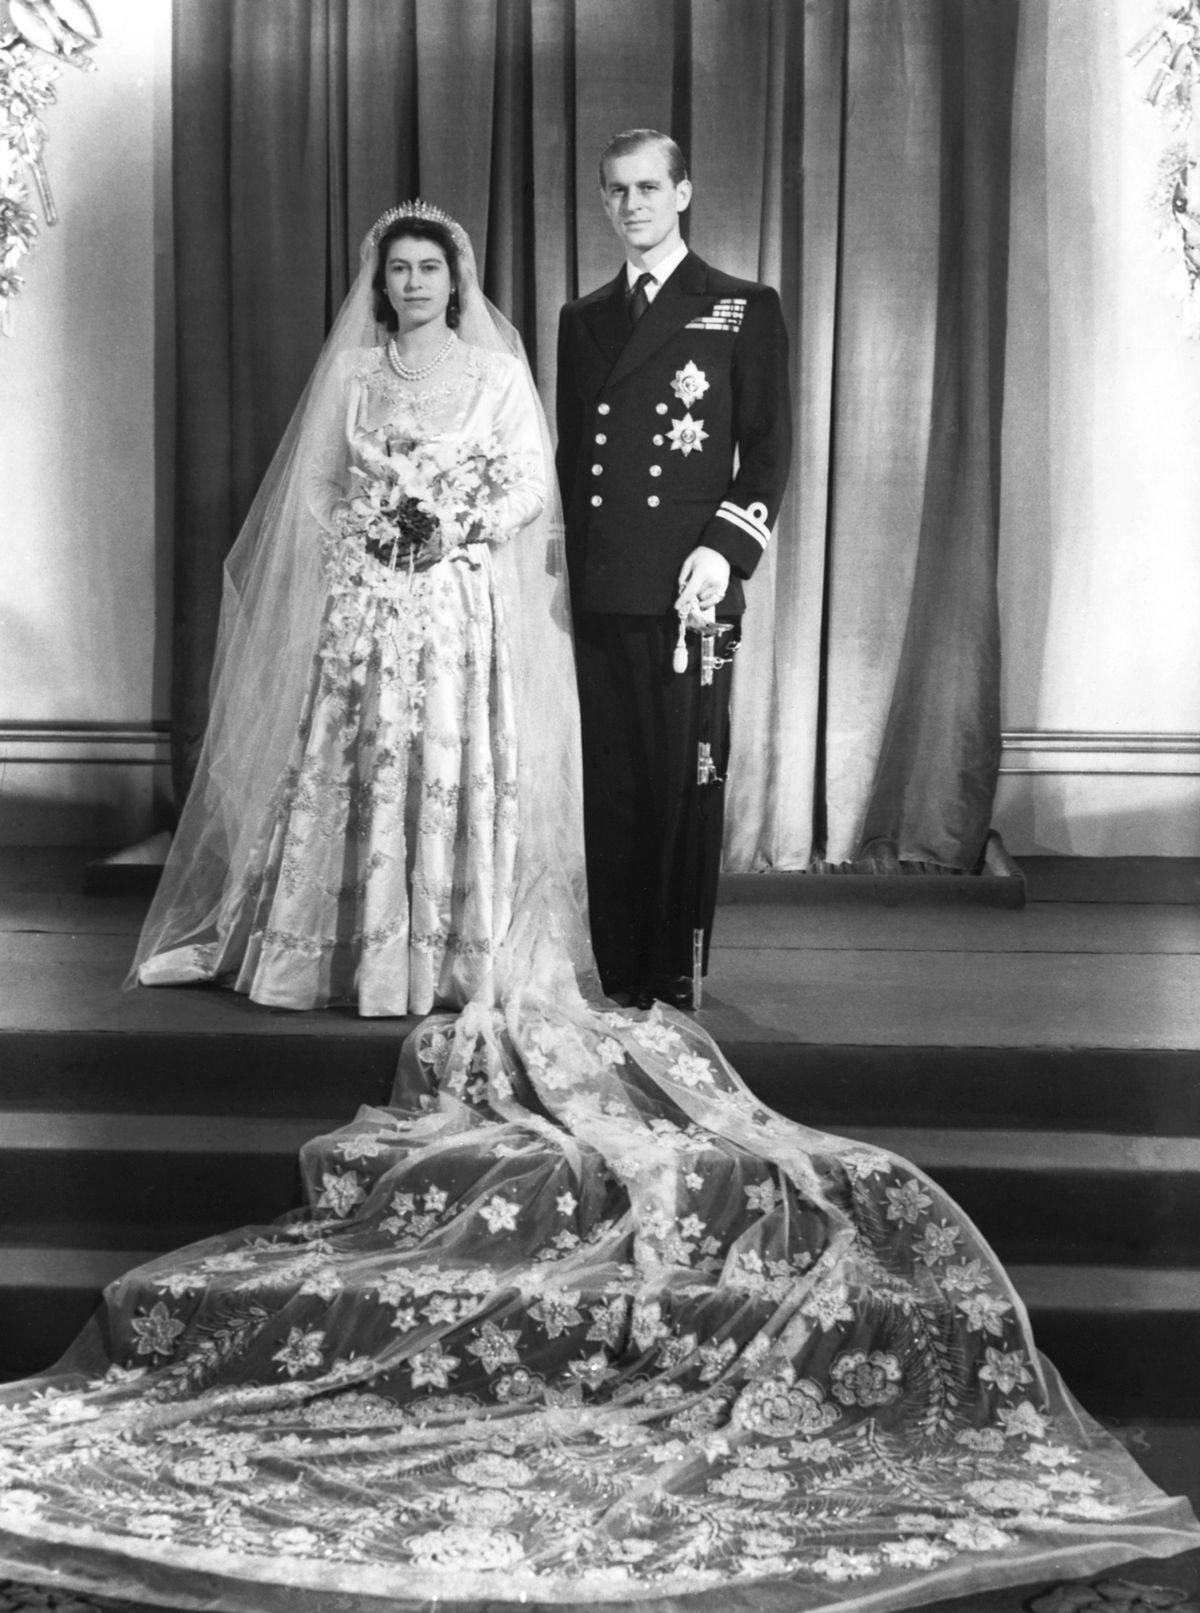 Royal Wedding, 1947
Erzsébet királynő és Fülöp herceg esküvője